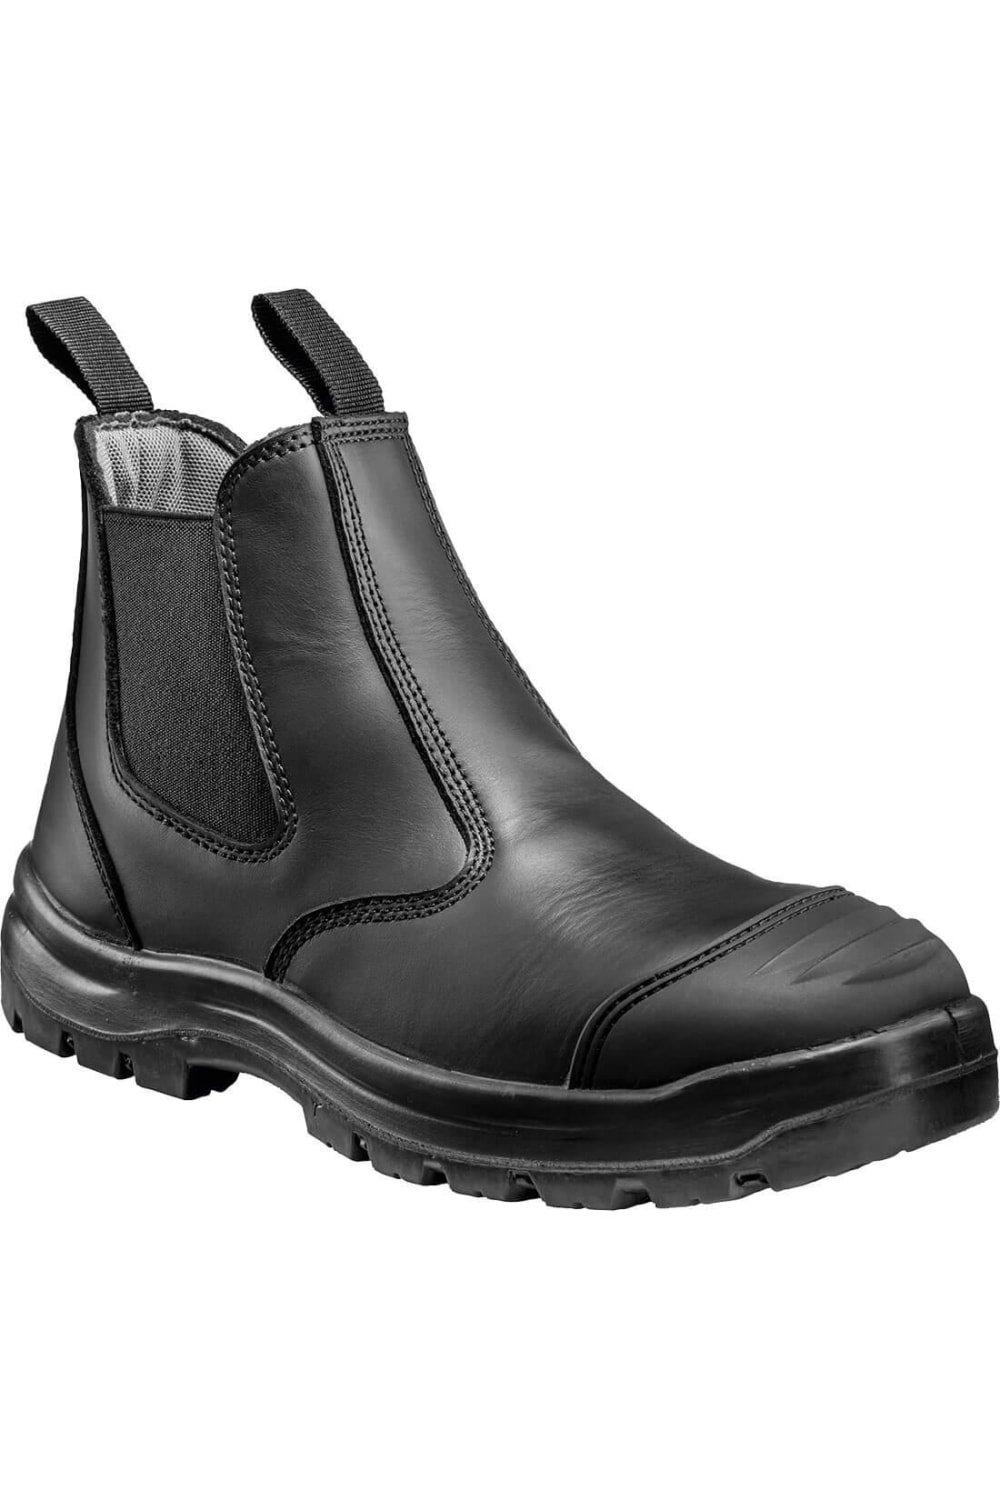 Кожаные защитные ботинки для дилеров Portwest, черный каталог дилеров